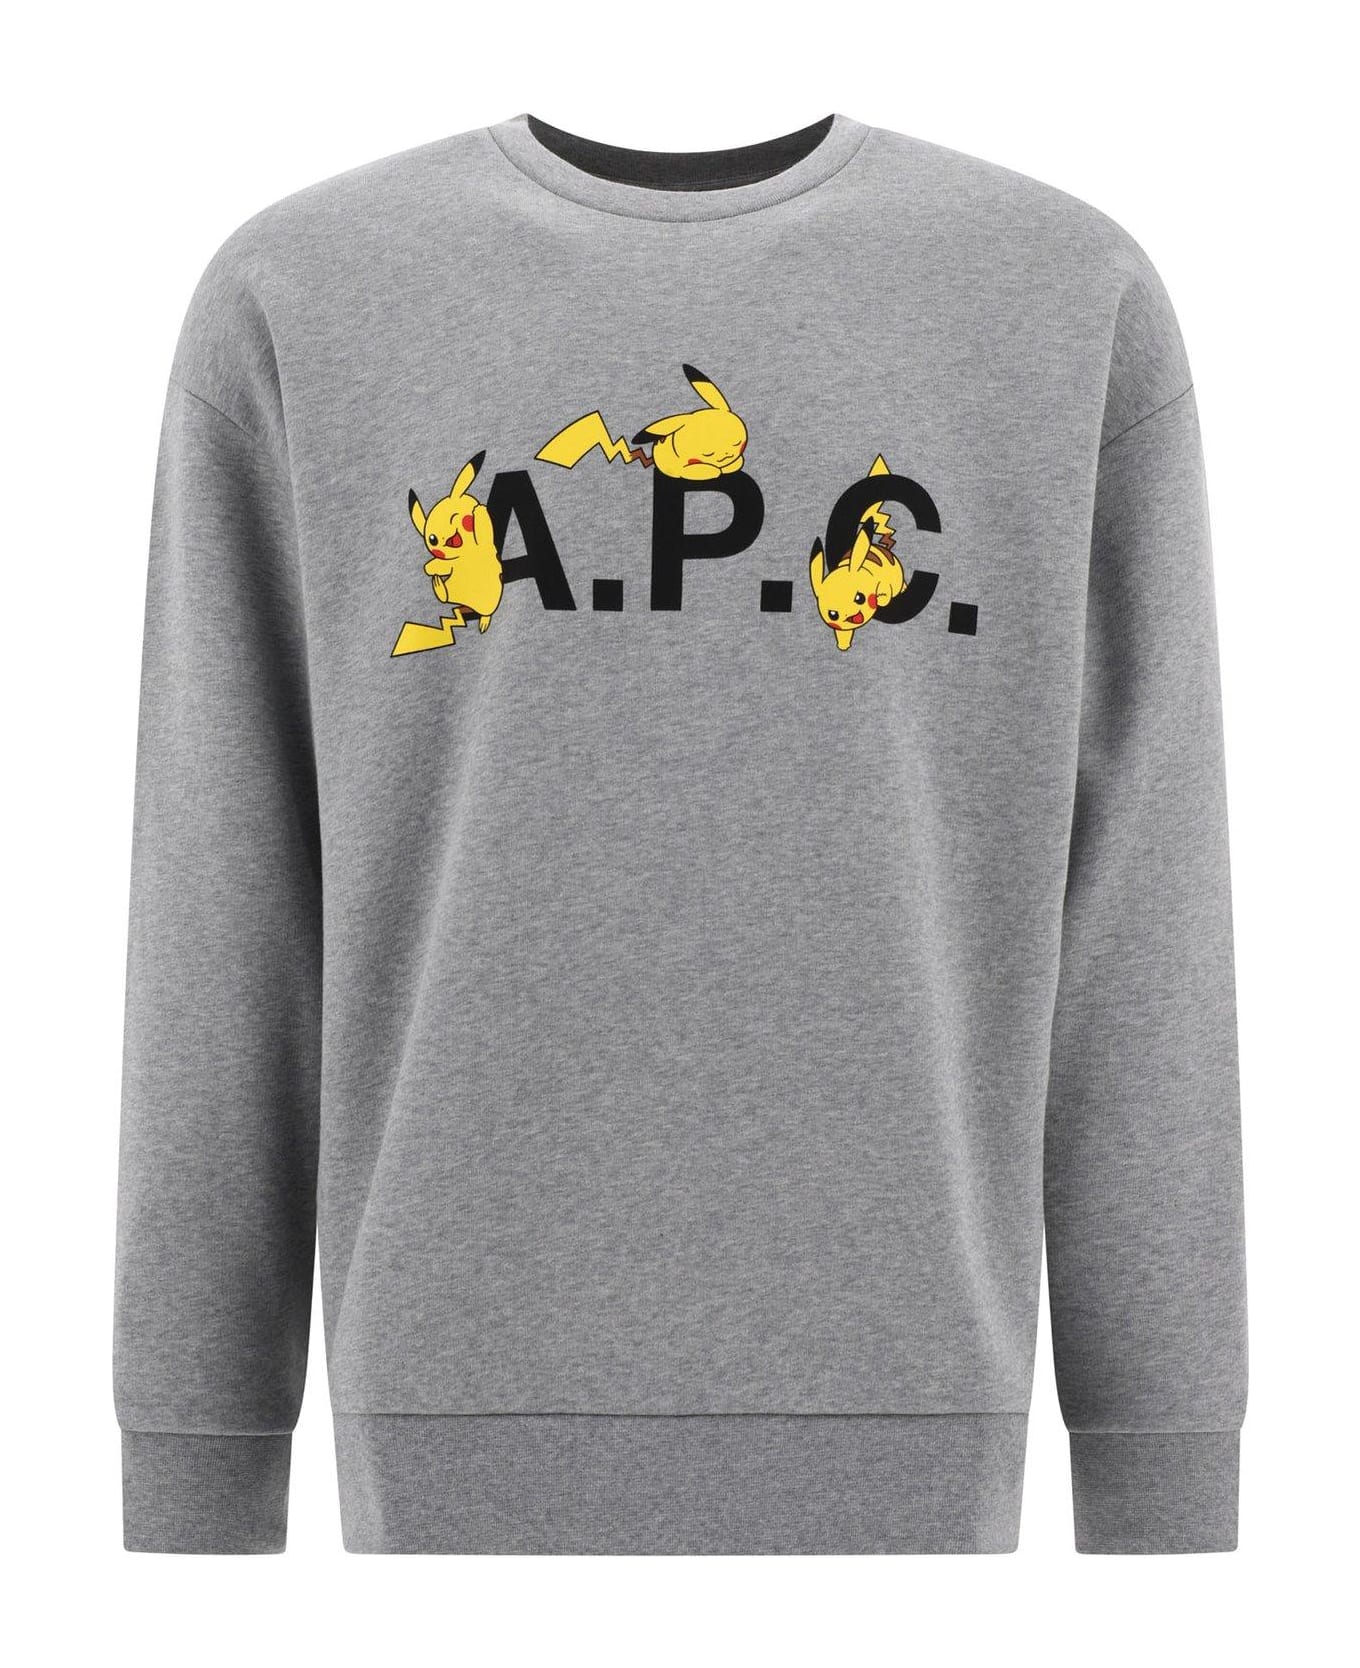 A.P.C. Pikachu Track Pants - gris clair ch.